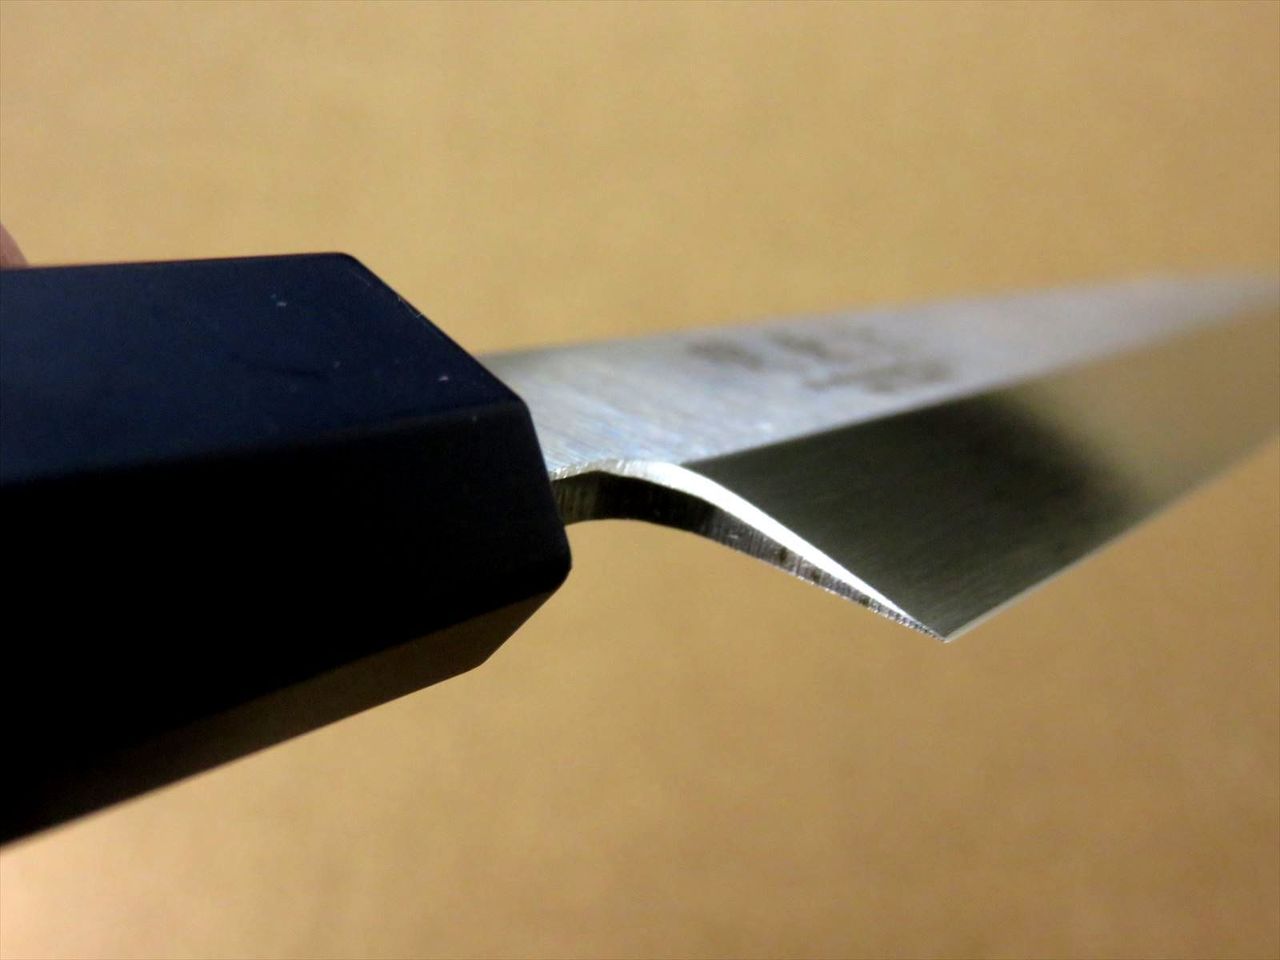 Japanese Kitchen Sashimi Knife 8.3 inch Aluminum Handle Single edged SEKI JAPAN